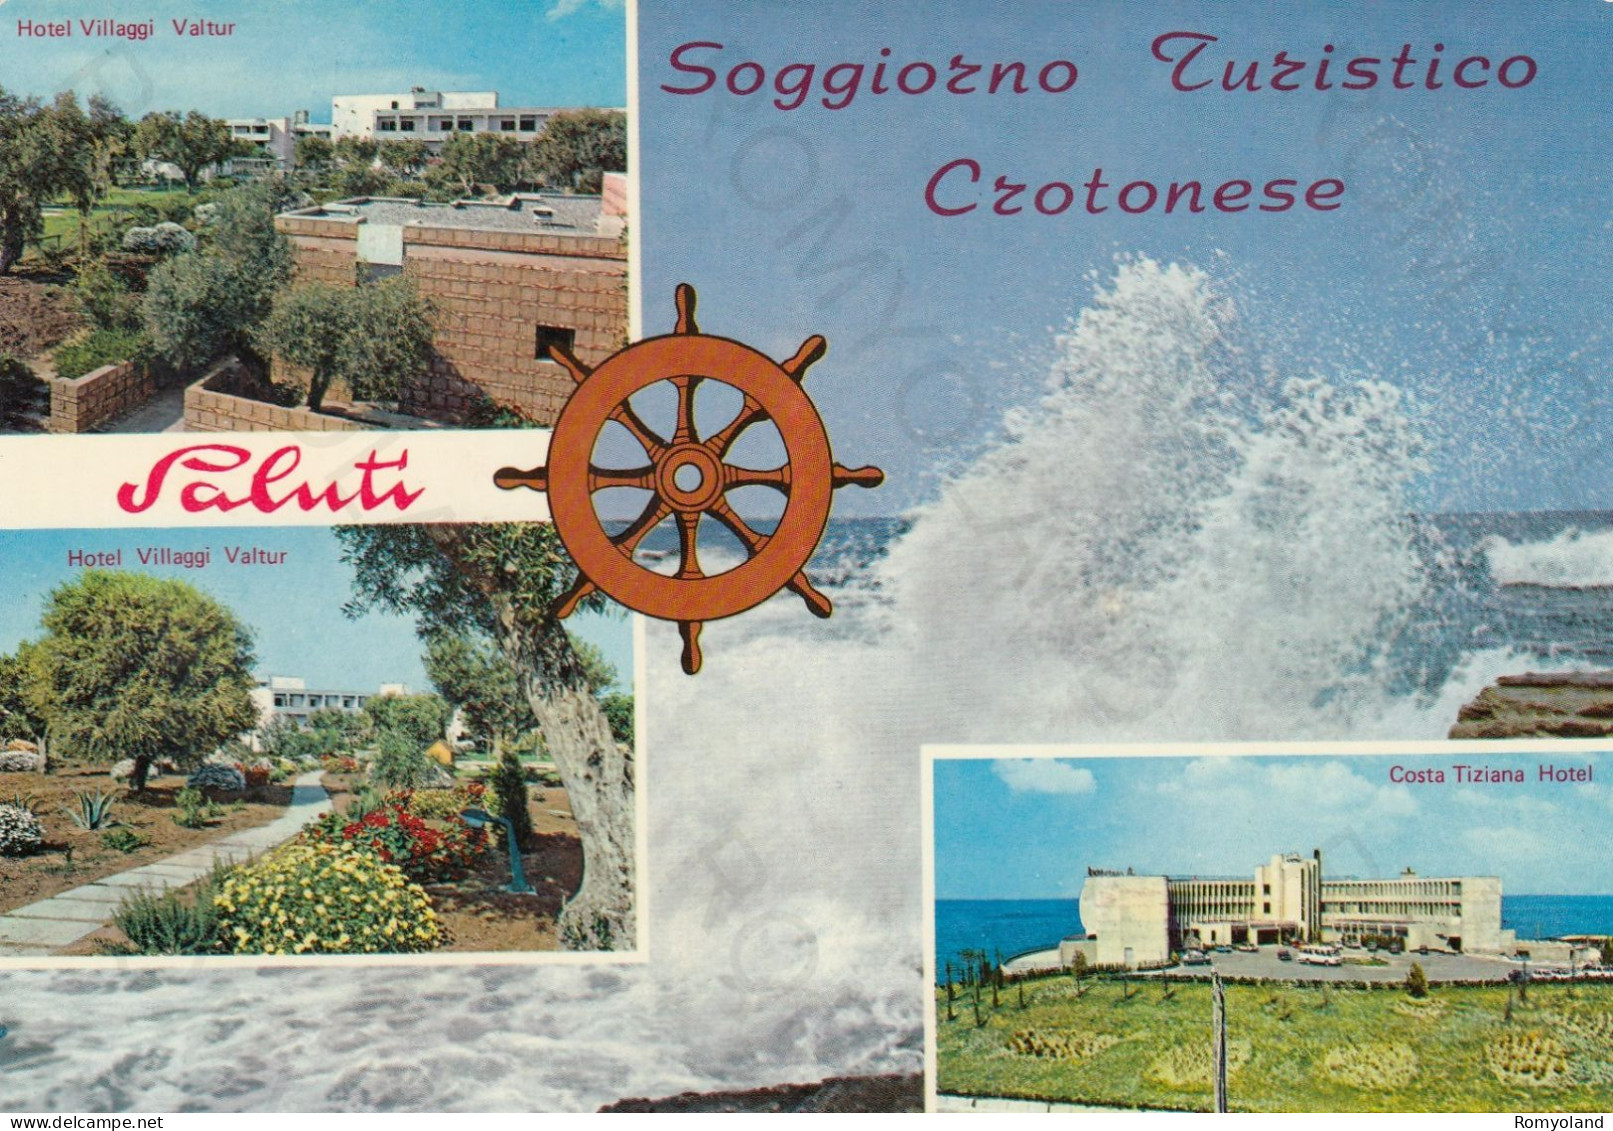 CARTOLINA  CROTONE,CALABRIA-SOGGIORNO TURISTICO CROTONESE-HOTEL VILLAGGI VALTUR-COSTA TIZIANA HOTEL-VIAGGIATA 1975 - Crotone